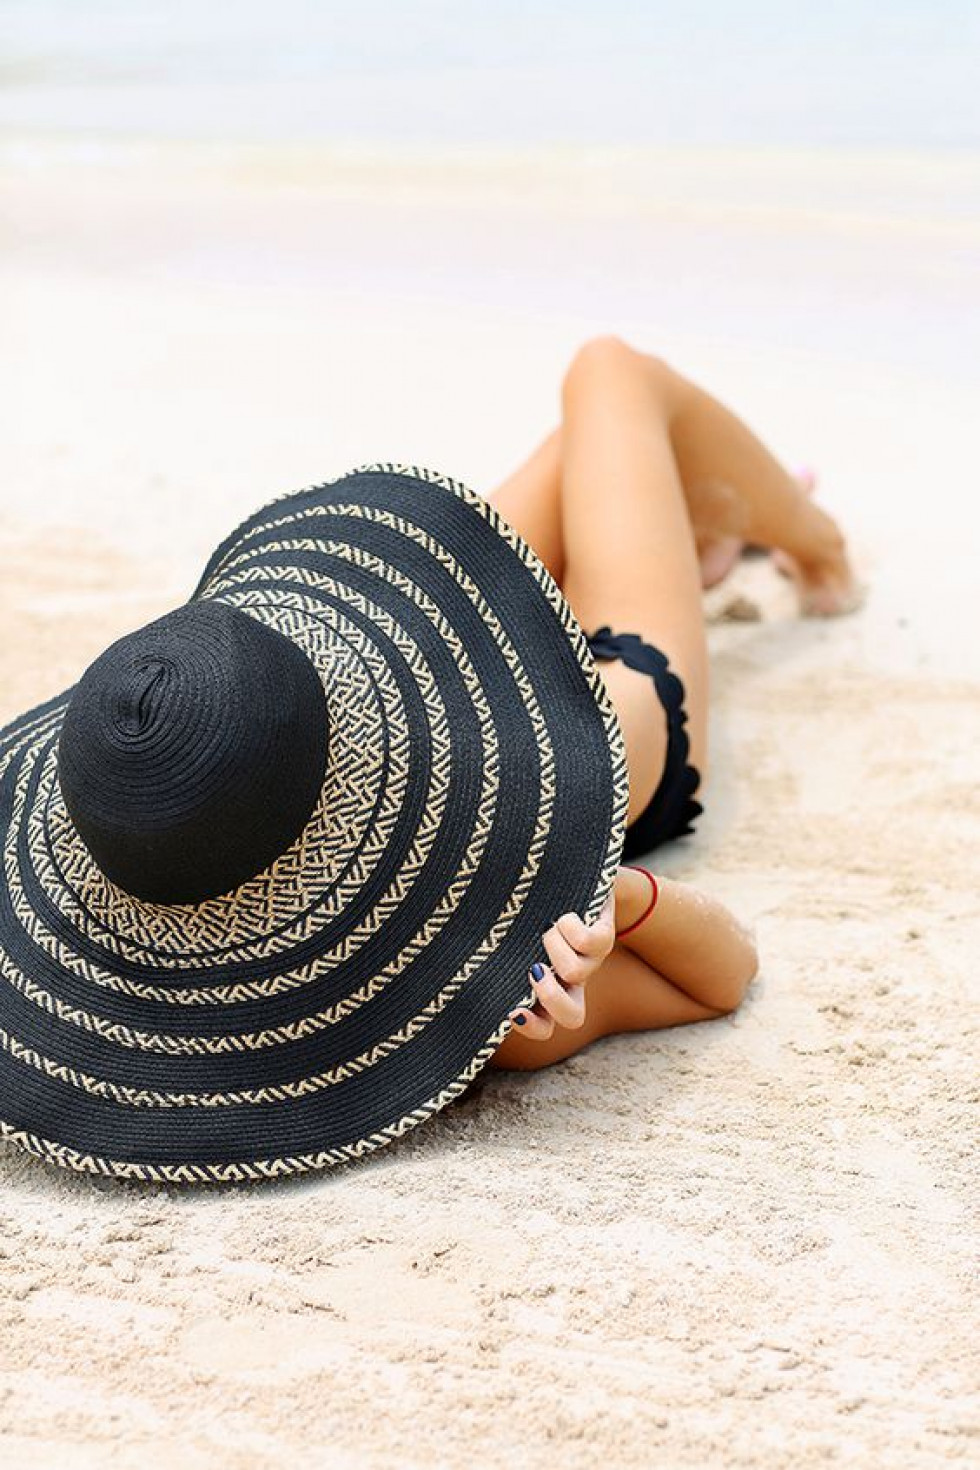 Шляпа на пляже. Девушка в шляпе на пляже. Пляжная фотосессия. Пляжная шляпа. Шляпка на море.